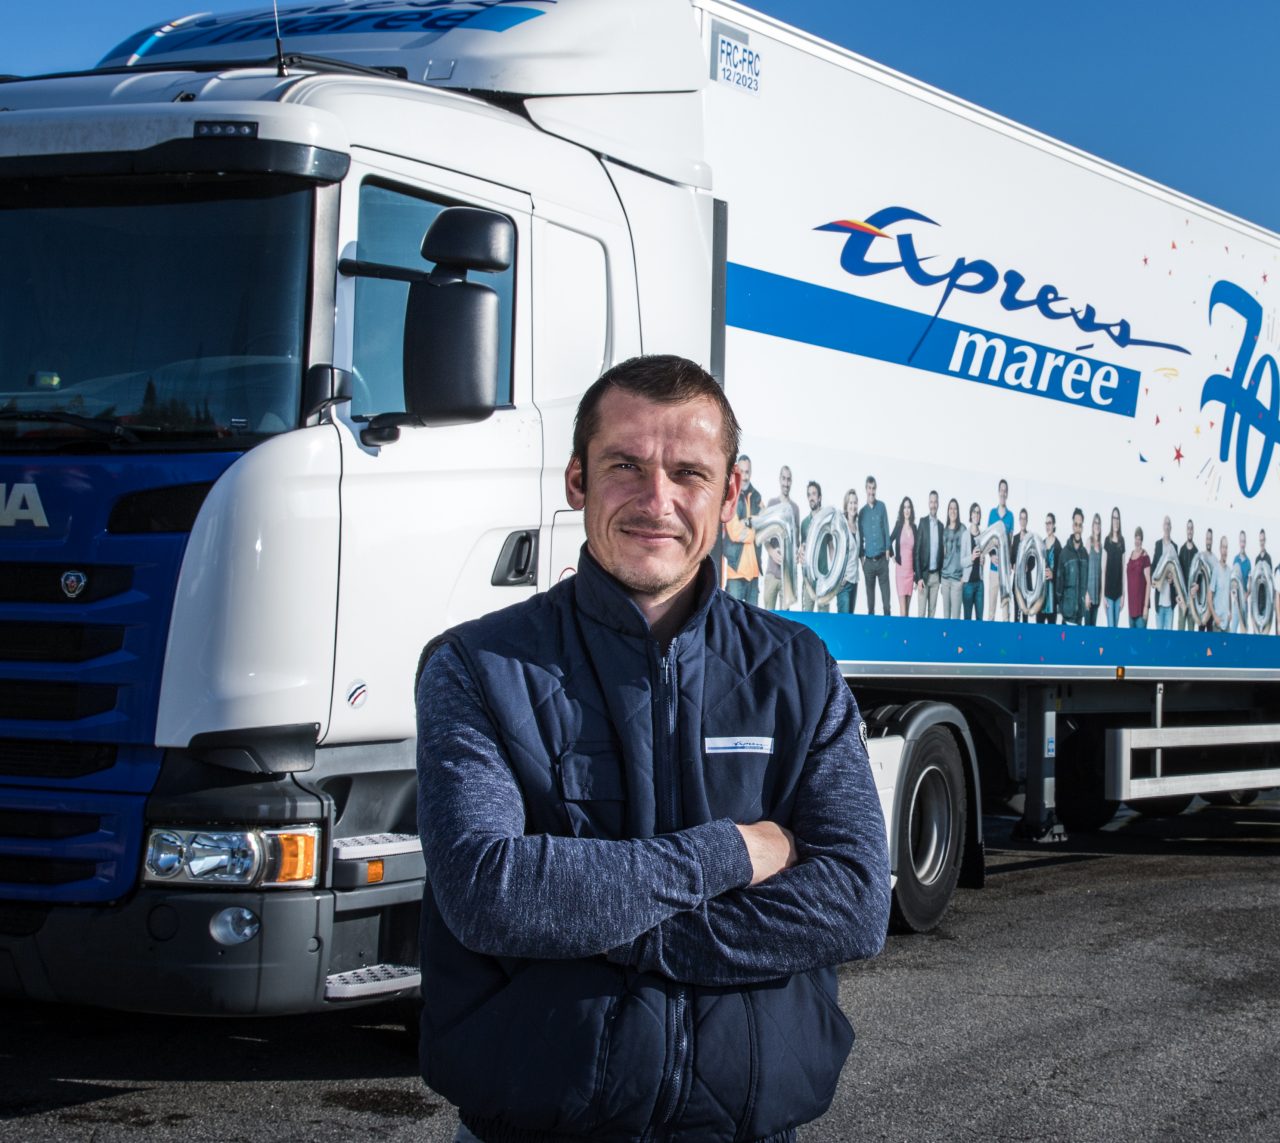 Phillippe Barbier műszaki vezető az Express Marée -nál (Franciaország)